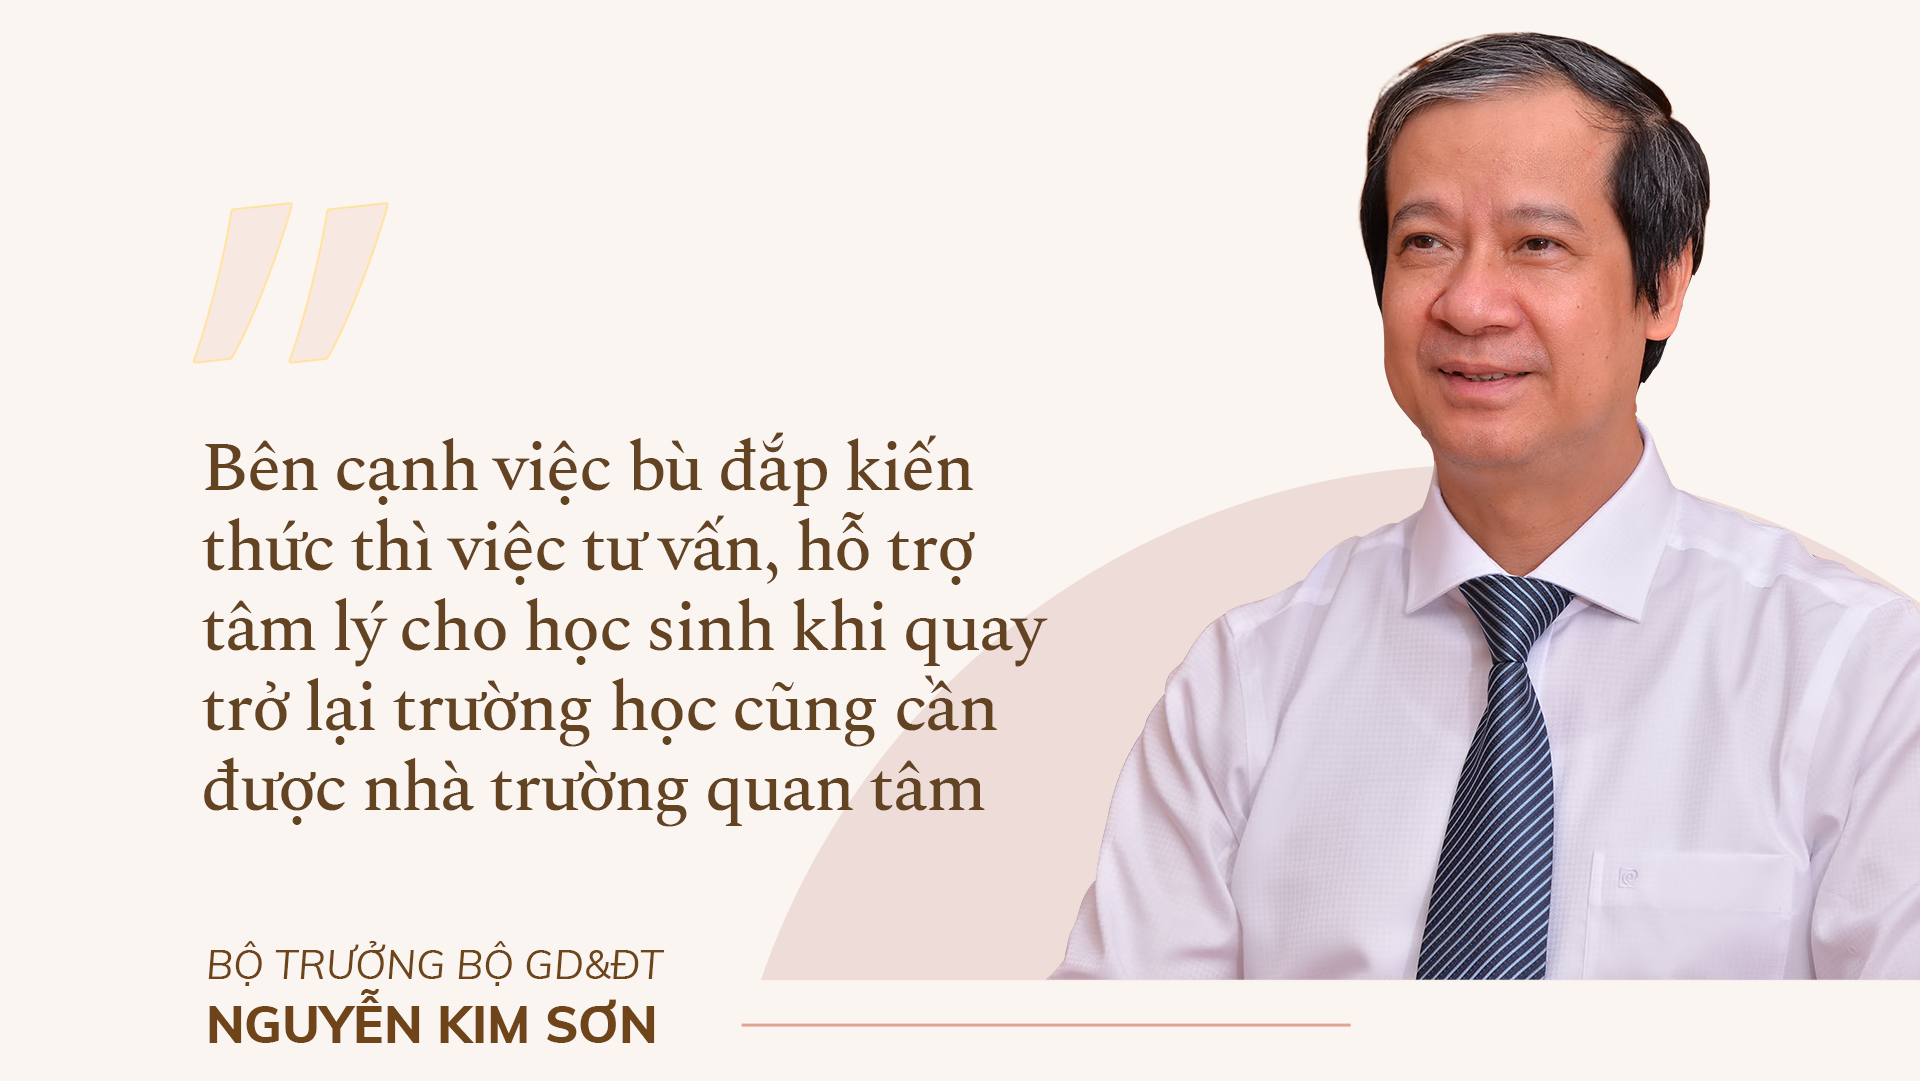 Bộ trưởng Bộ GD&ĐT Nguyễn Kim Sơn: Bù đắp kiến thức, tái thiết giáo dục - ảnh 6